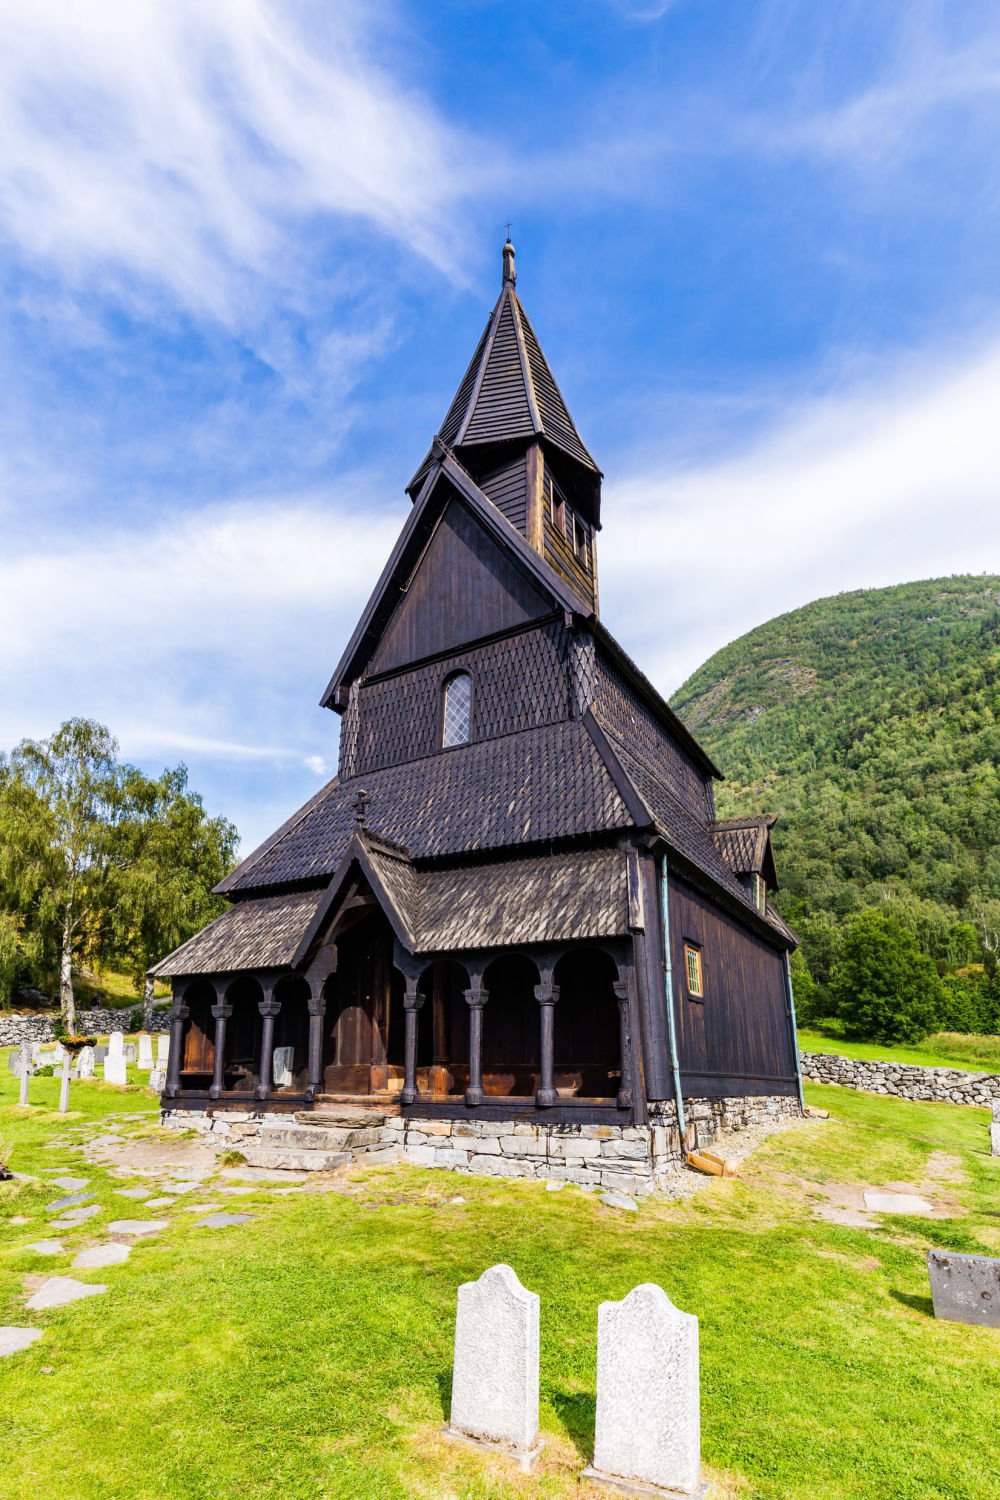 Image grand format de l'église Urnes Stave dans le fjord de Norvège.